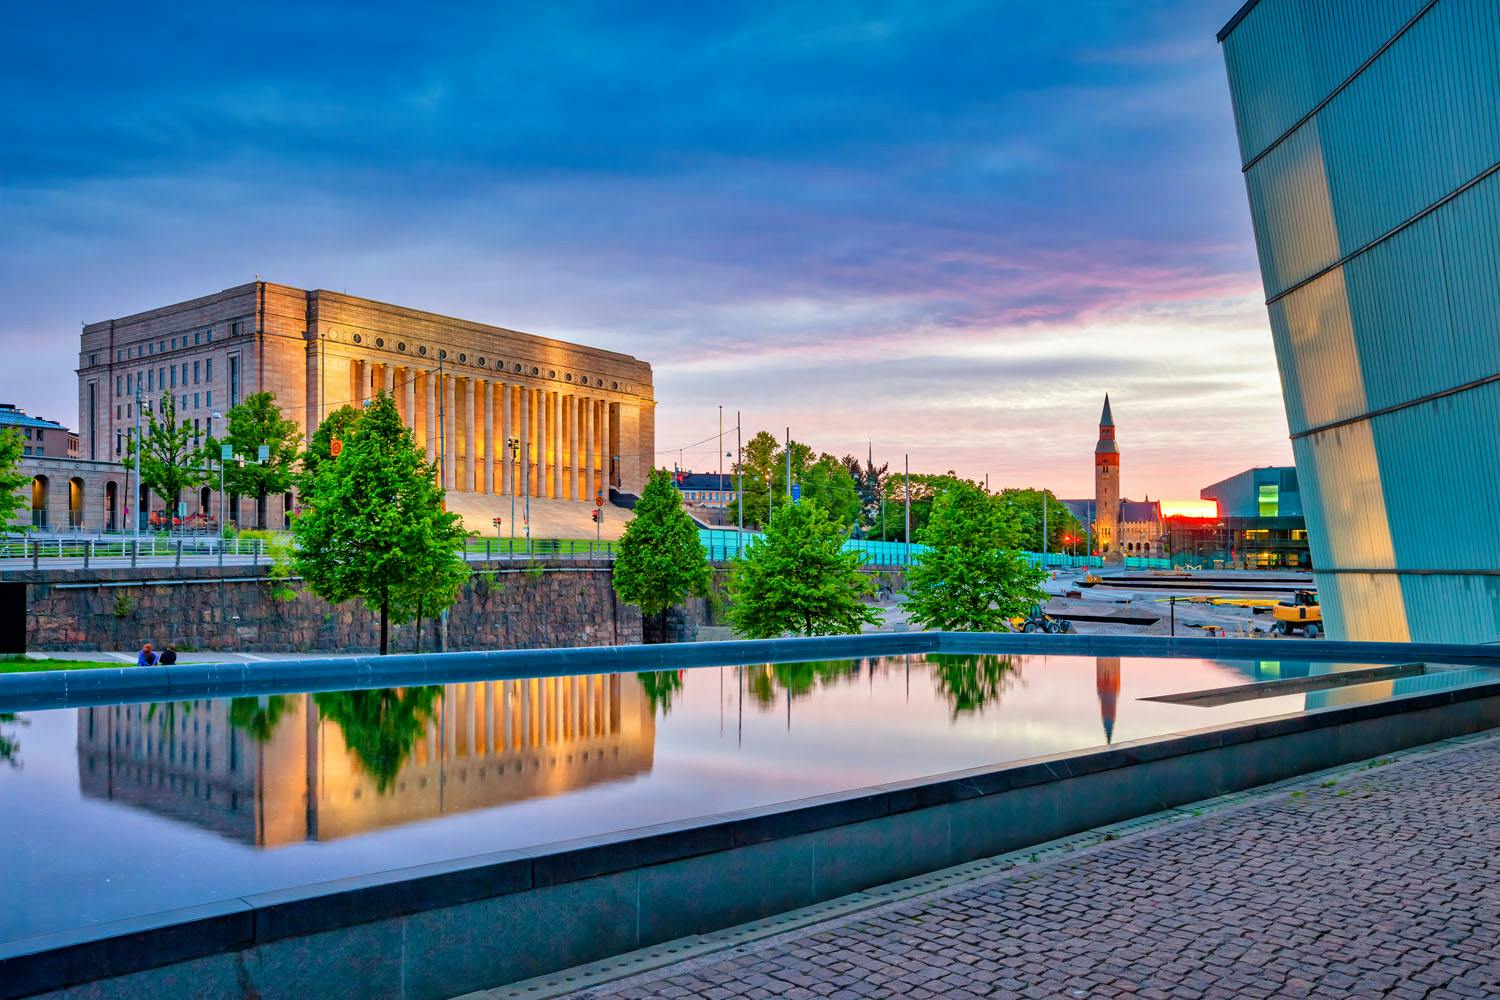 Helsinki - Parliament